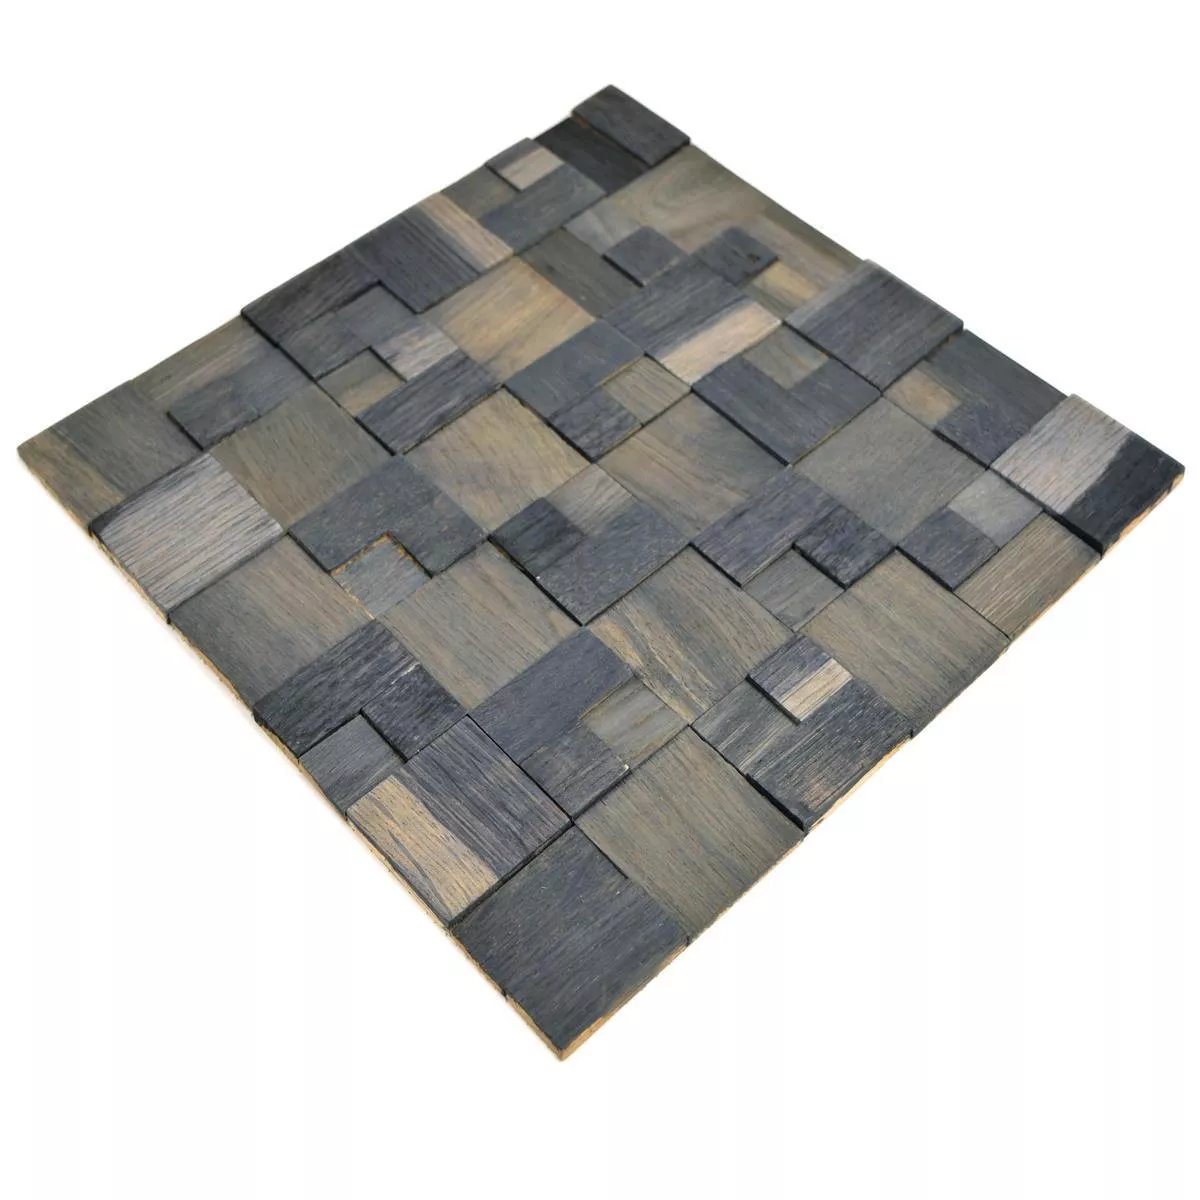 Sample Mosaic Tiles Wood Paris Self Adhesive 3D Dark Grey